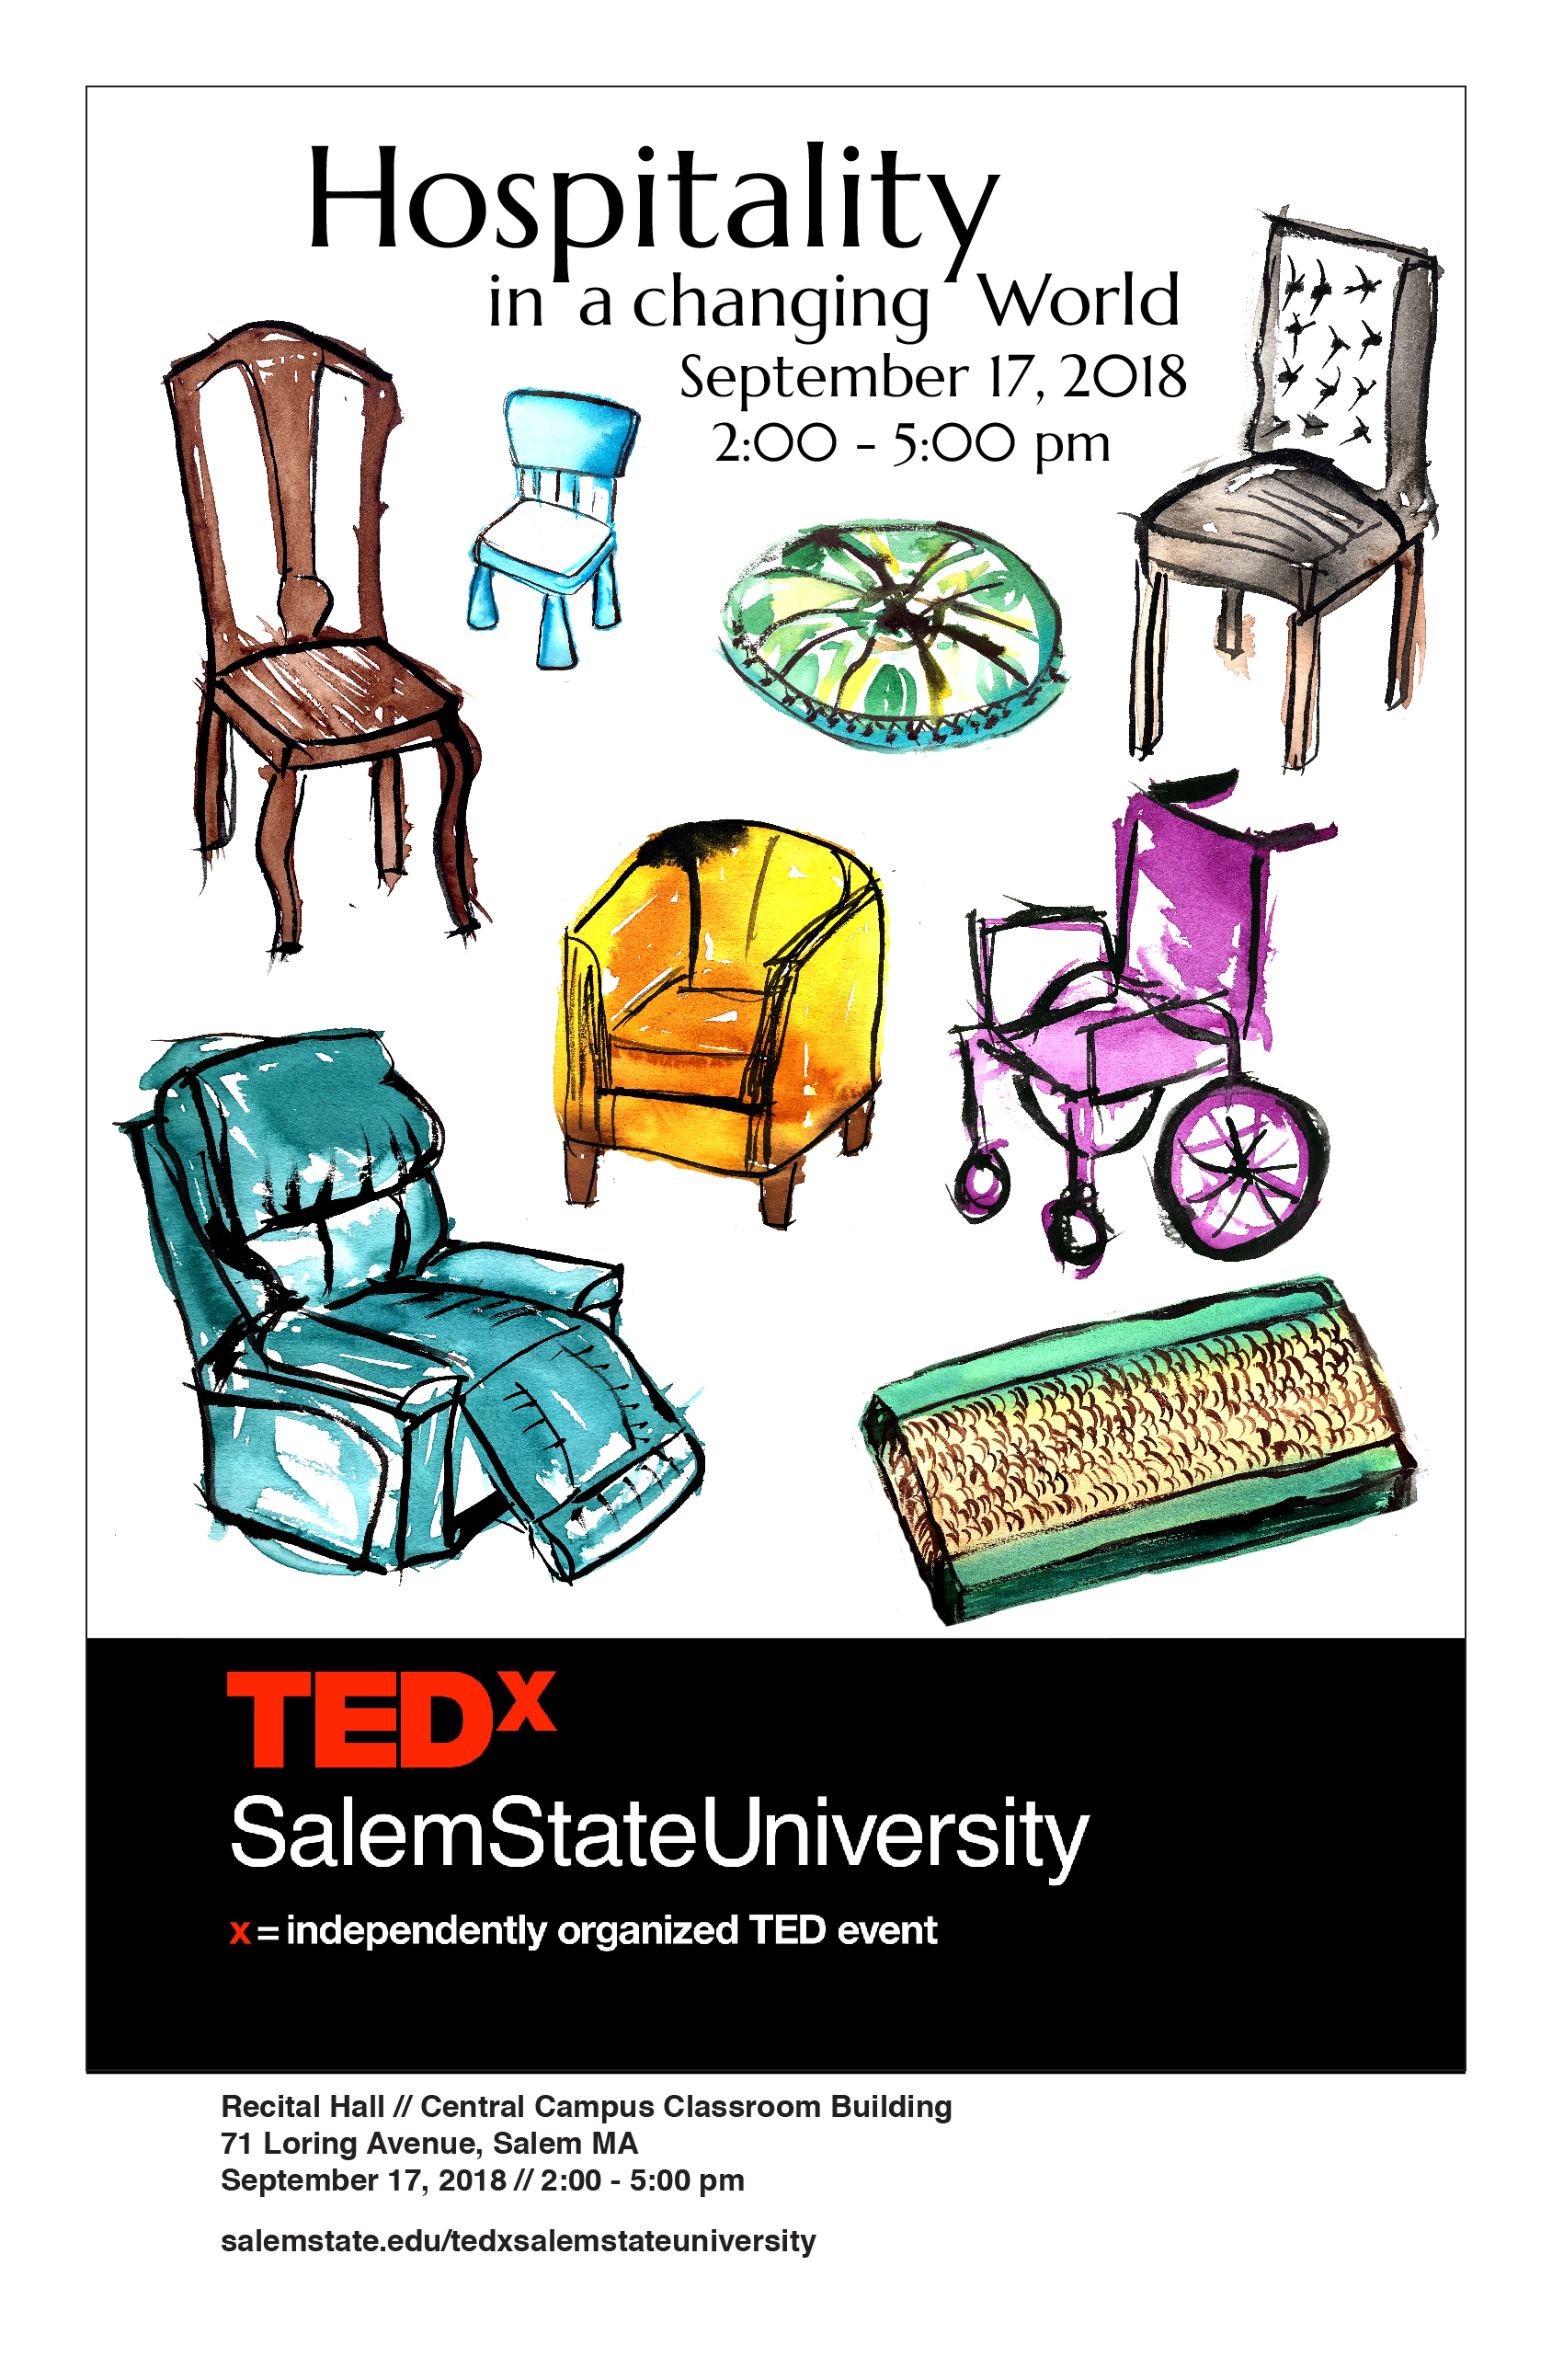 TEDx SalemStateUniversity 2018